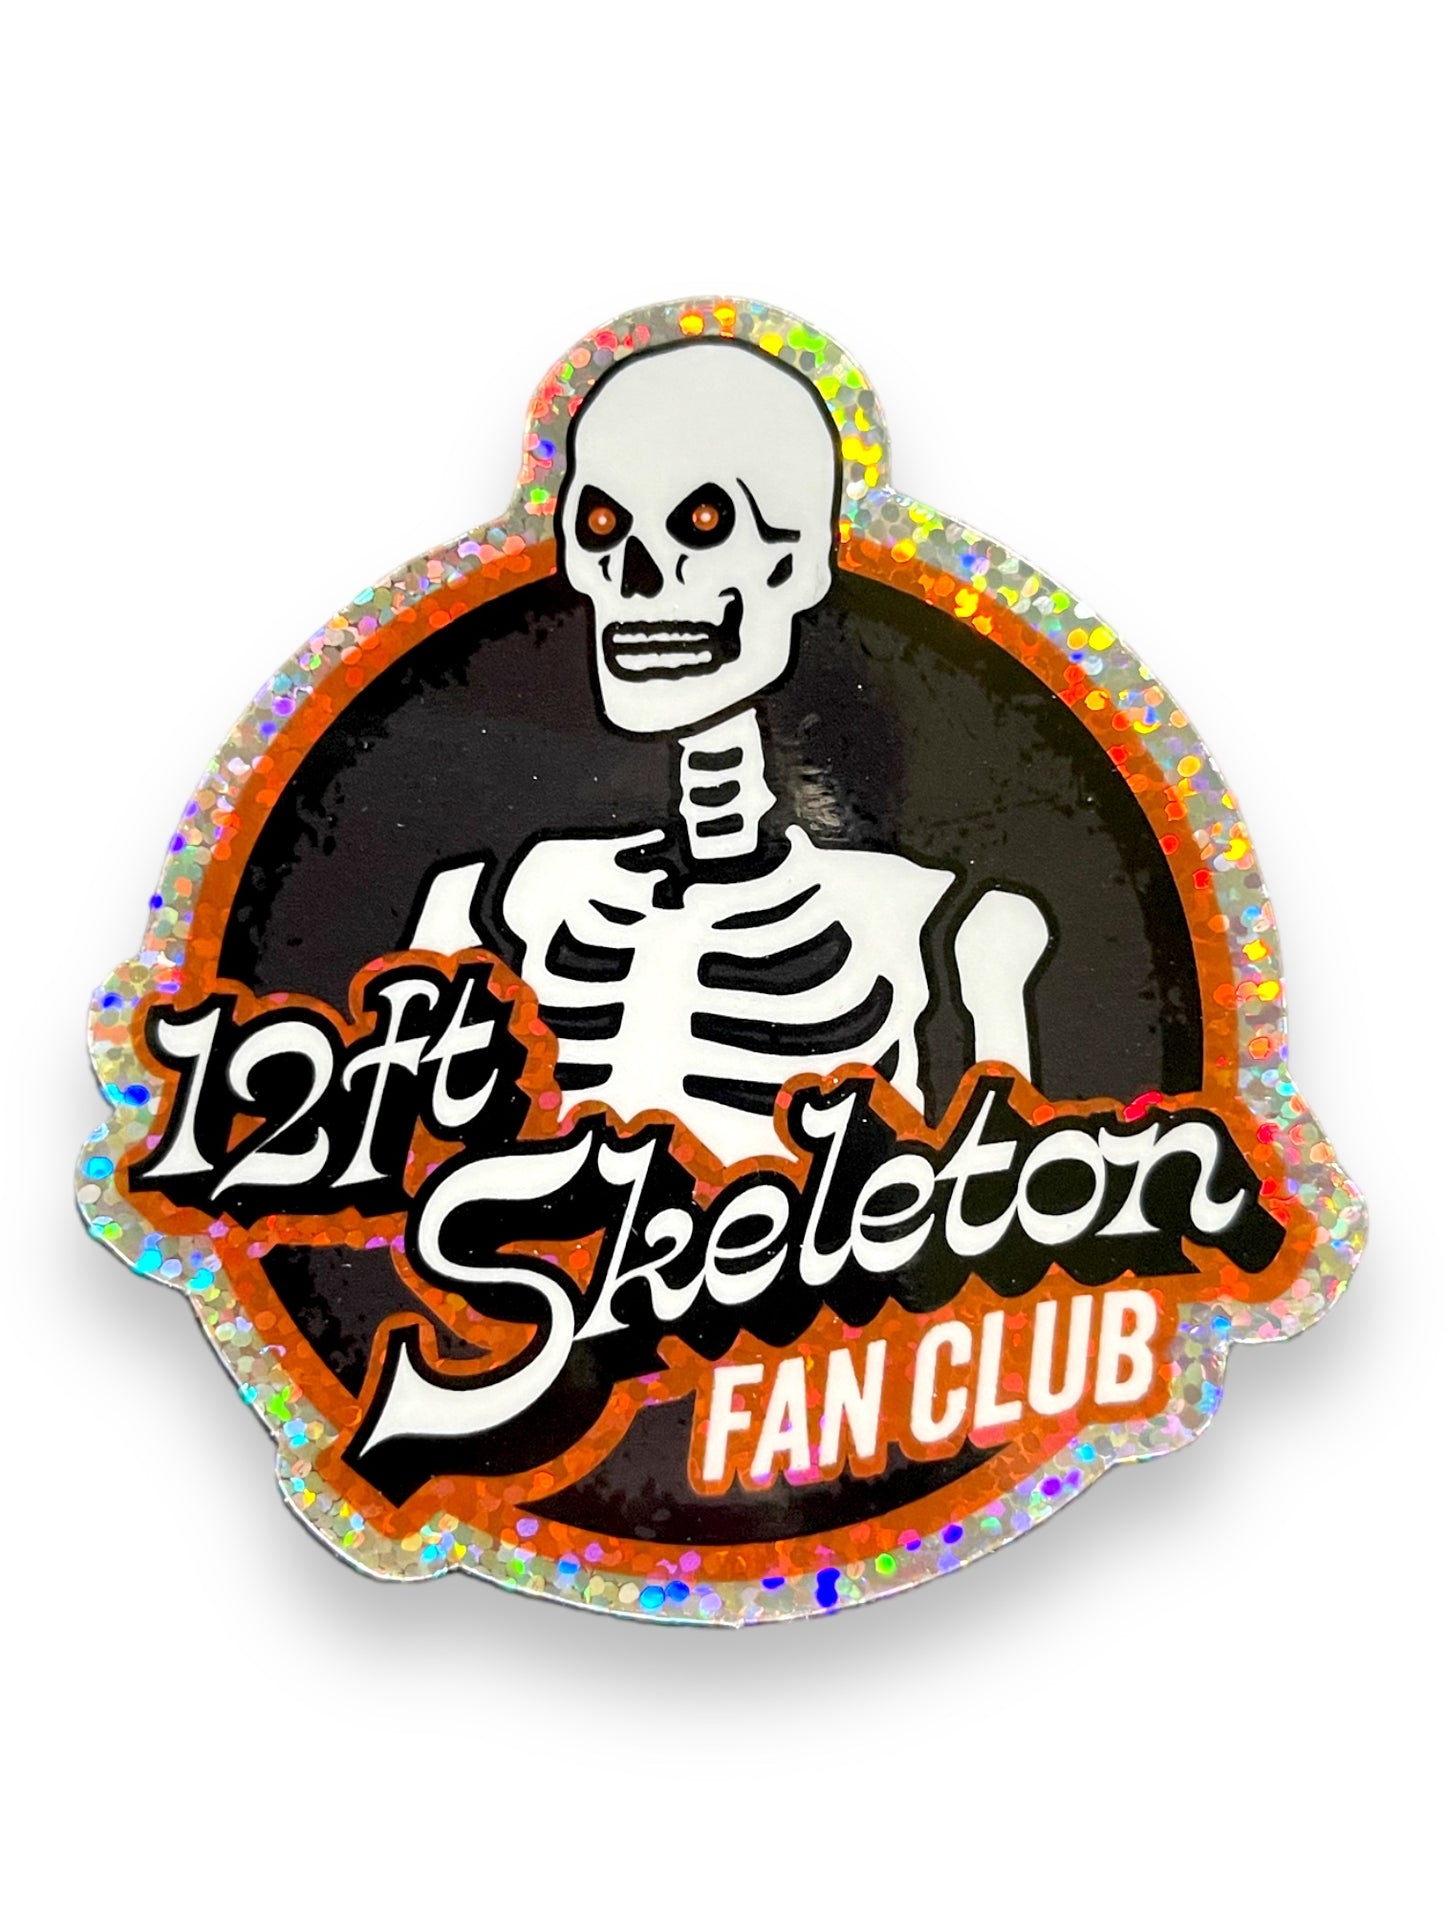 12-Ft Skeleton Fan Club Glitter Sticker